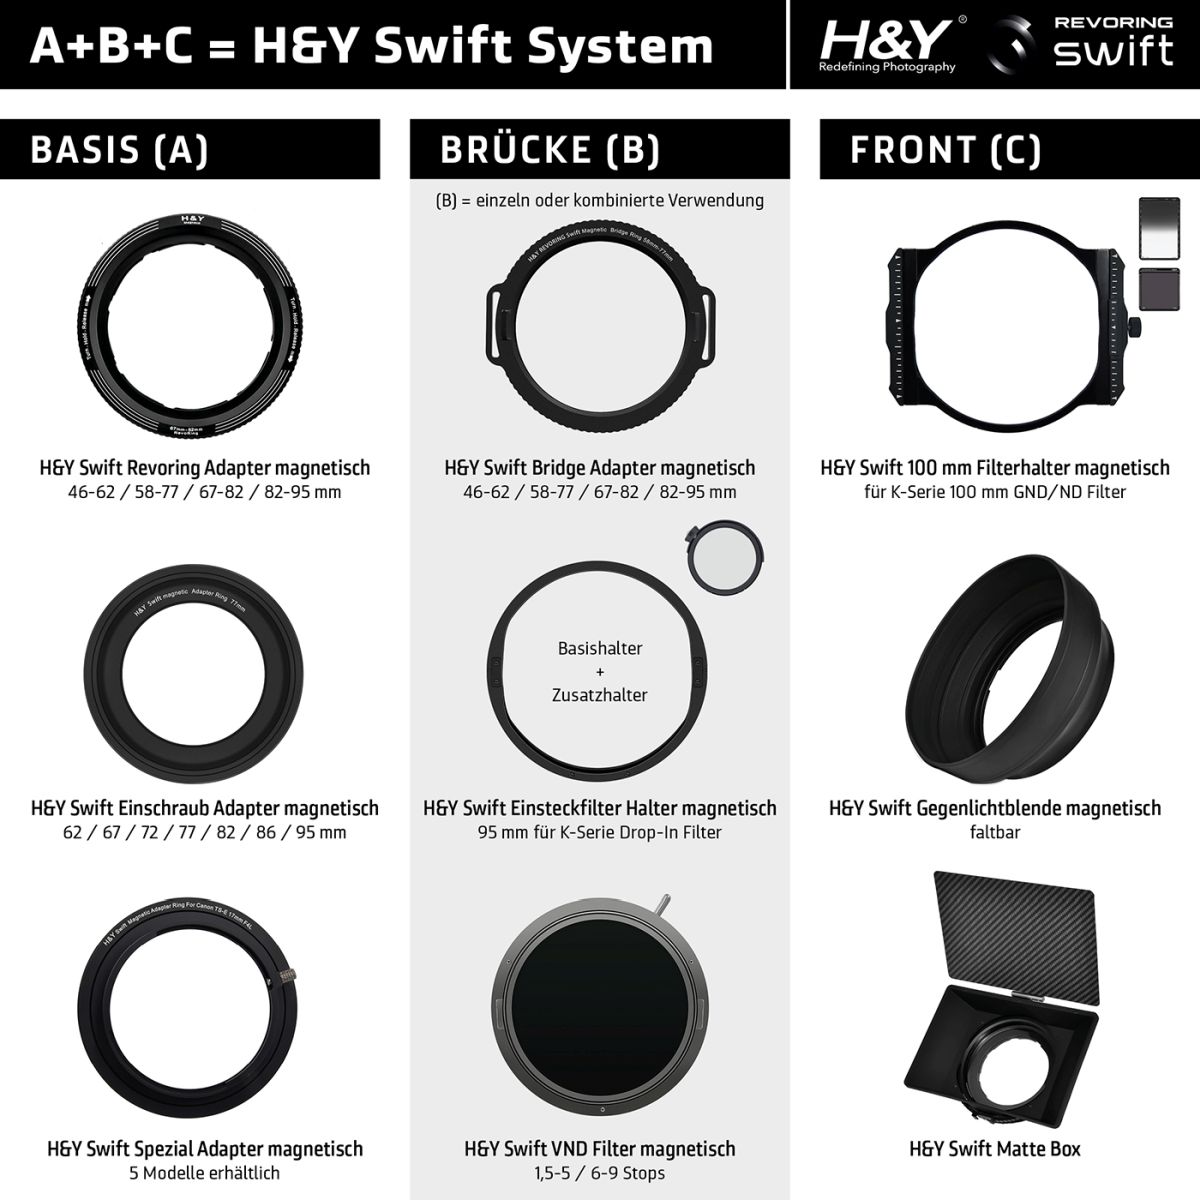 H&Y SWIFT B 95 mm Einsteckfilter Basishalter magnetisch